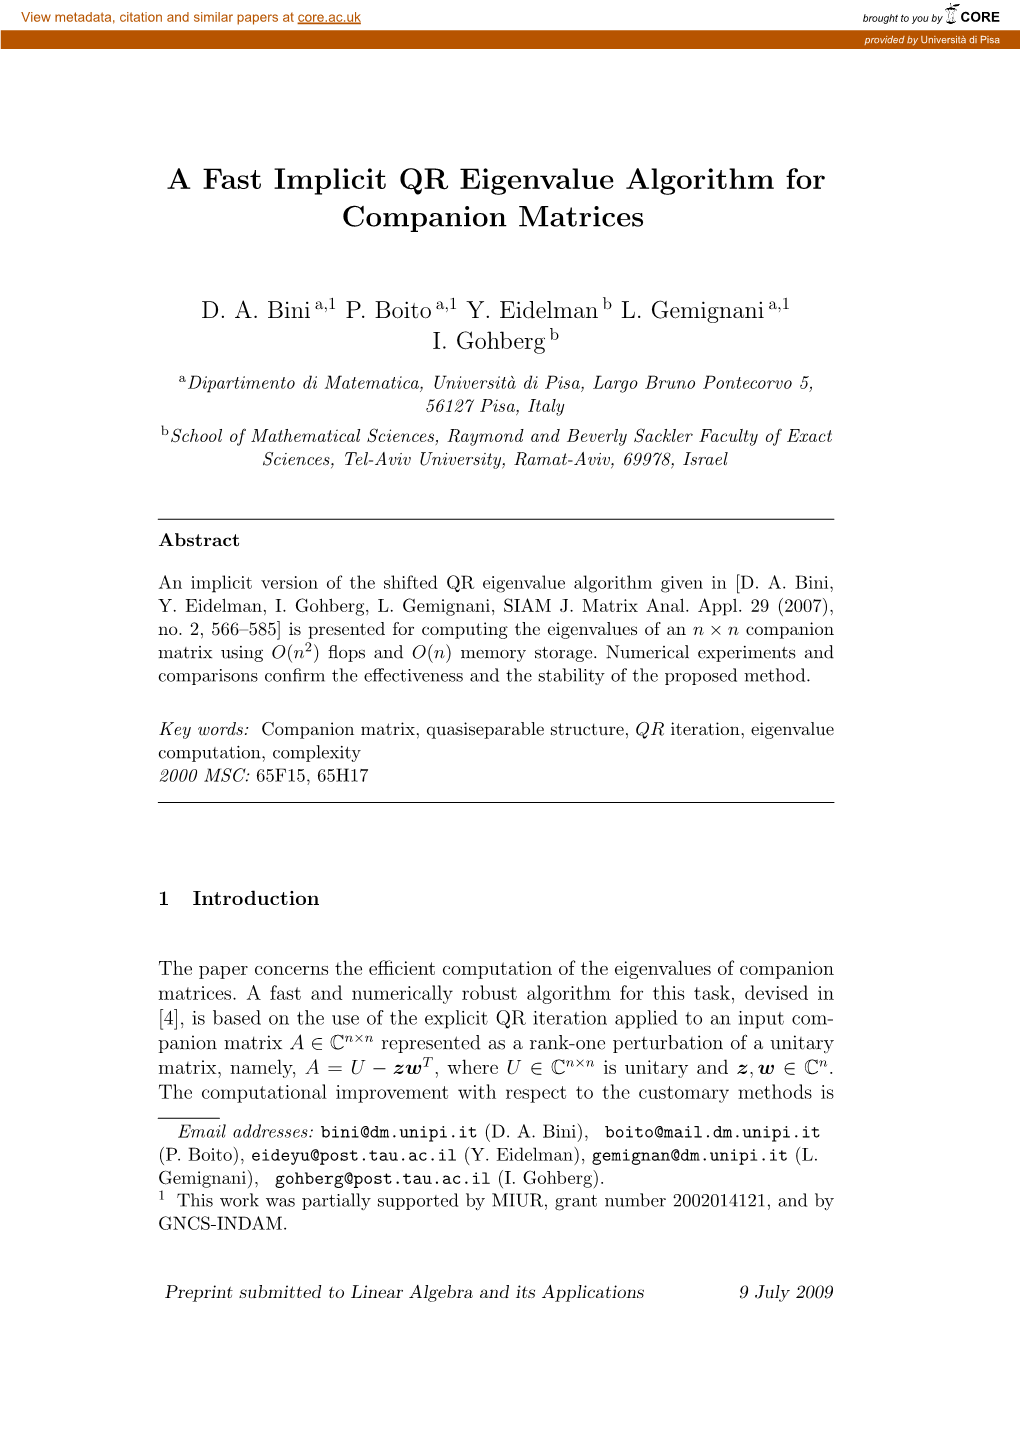 A Fast Implicit QR Eigenvalue Algorithm for Companion Matrices